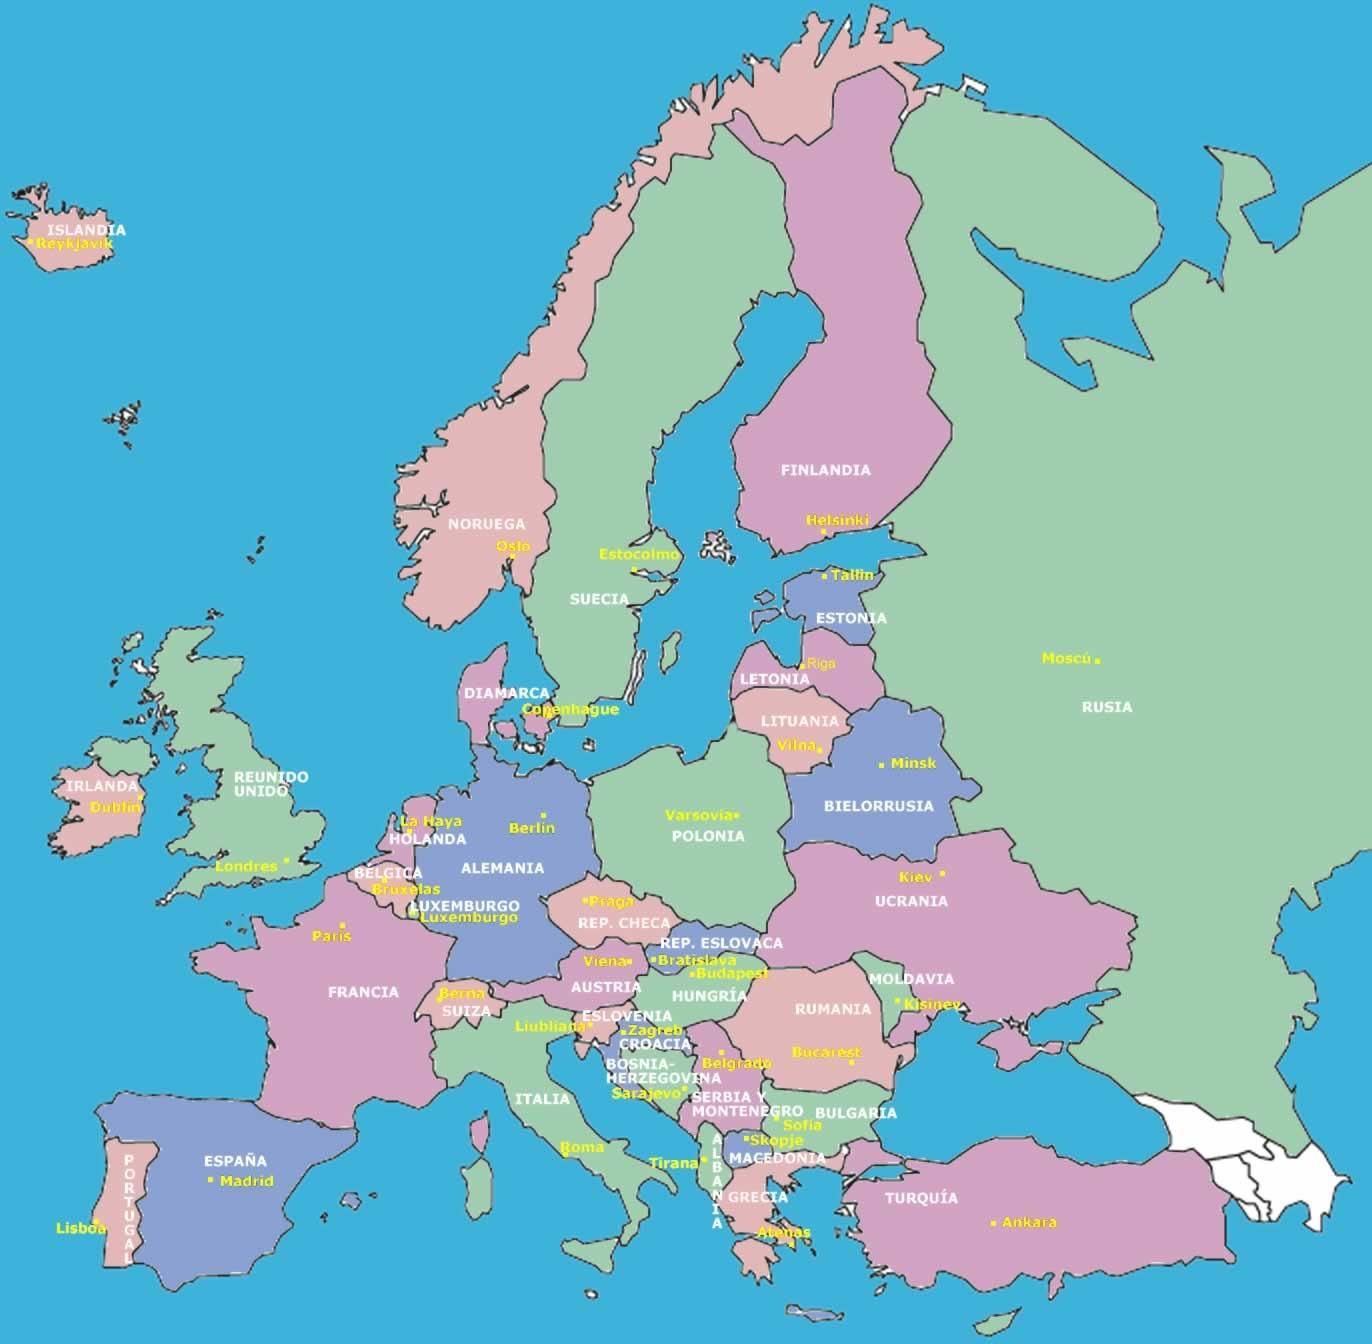 Europa Finalizada la Guerra Fría. Mapa político de Europa. Disponible en: http://www.mapapoliticoeuropa.com/ Actividades. 1-. Realiza un cuadro comparativo, con las diferencias que encuentras. 2-.